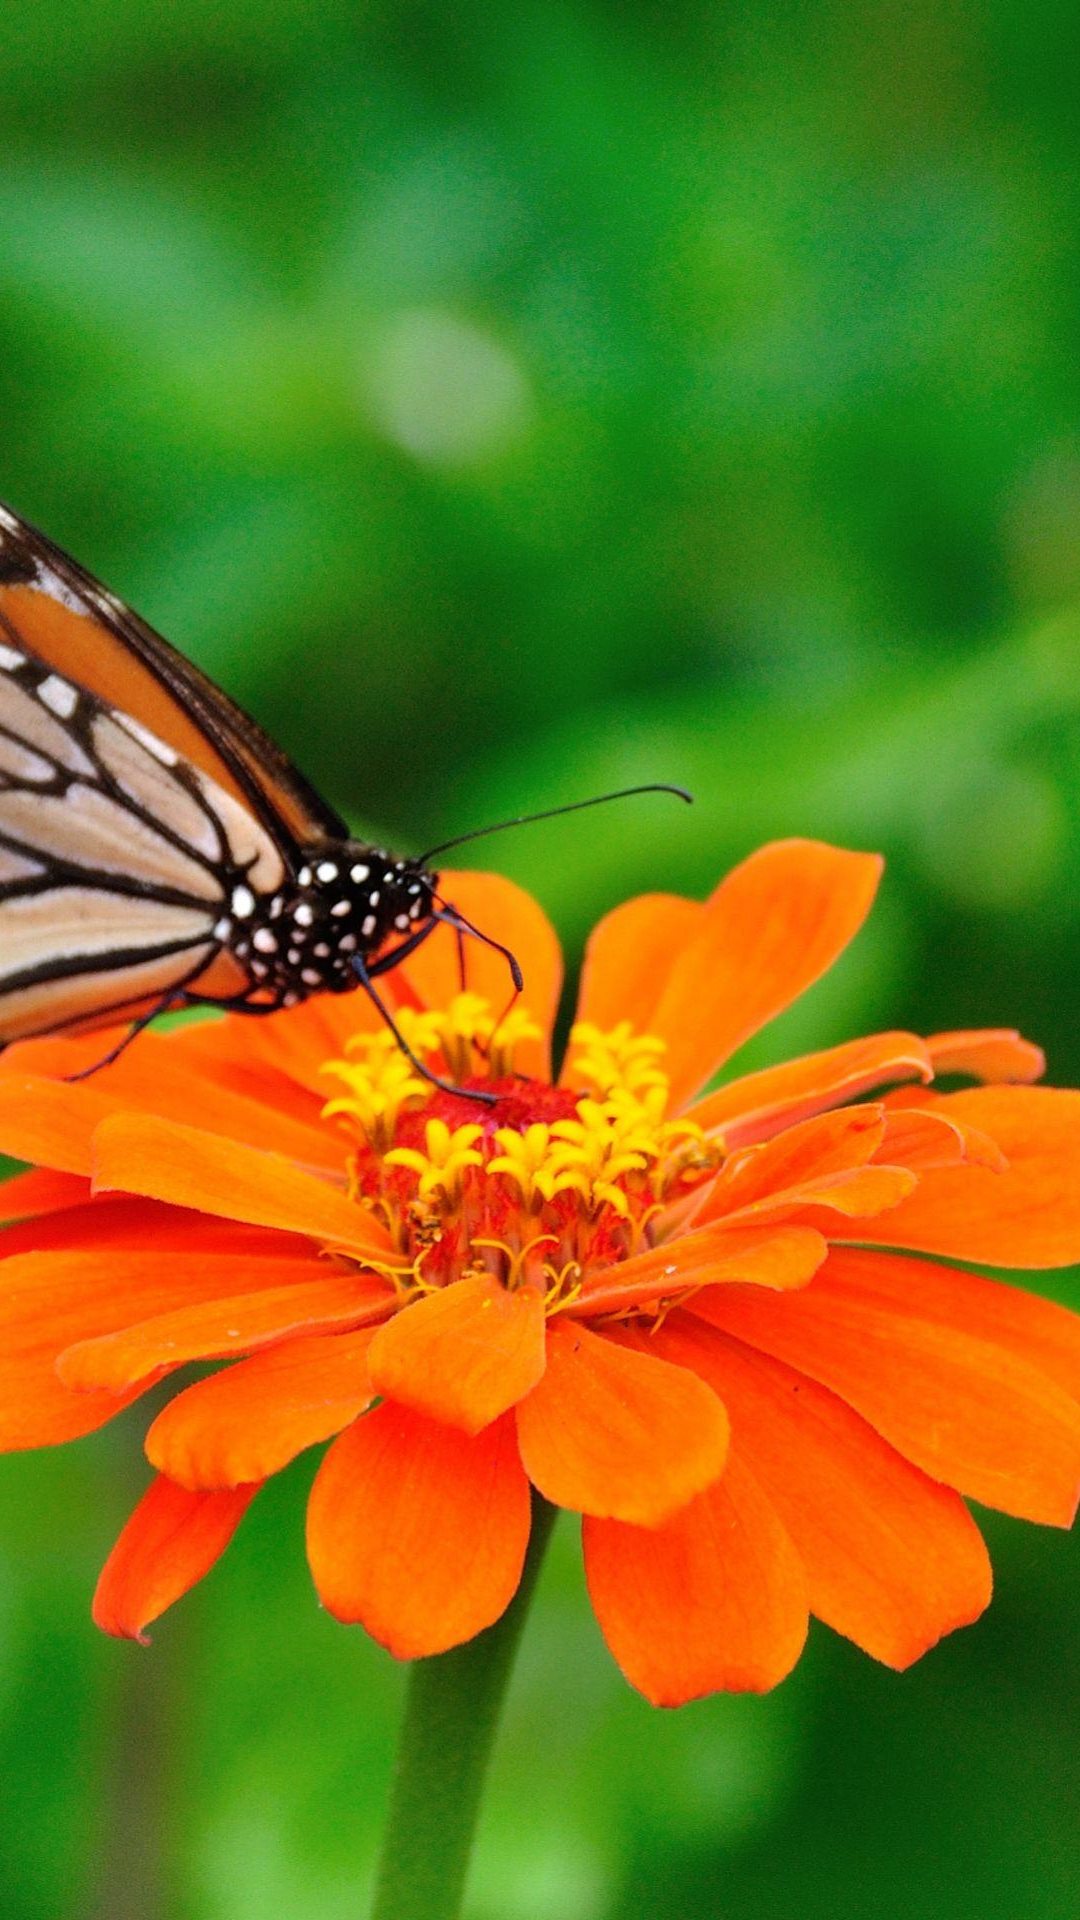 fondo de pantalla de mariposa gratis,mariposa,cynthia subgenus,mariposa monarca,insecto,polillas y mariposas